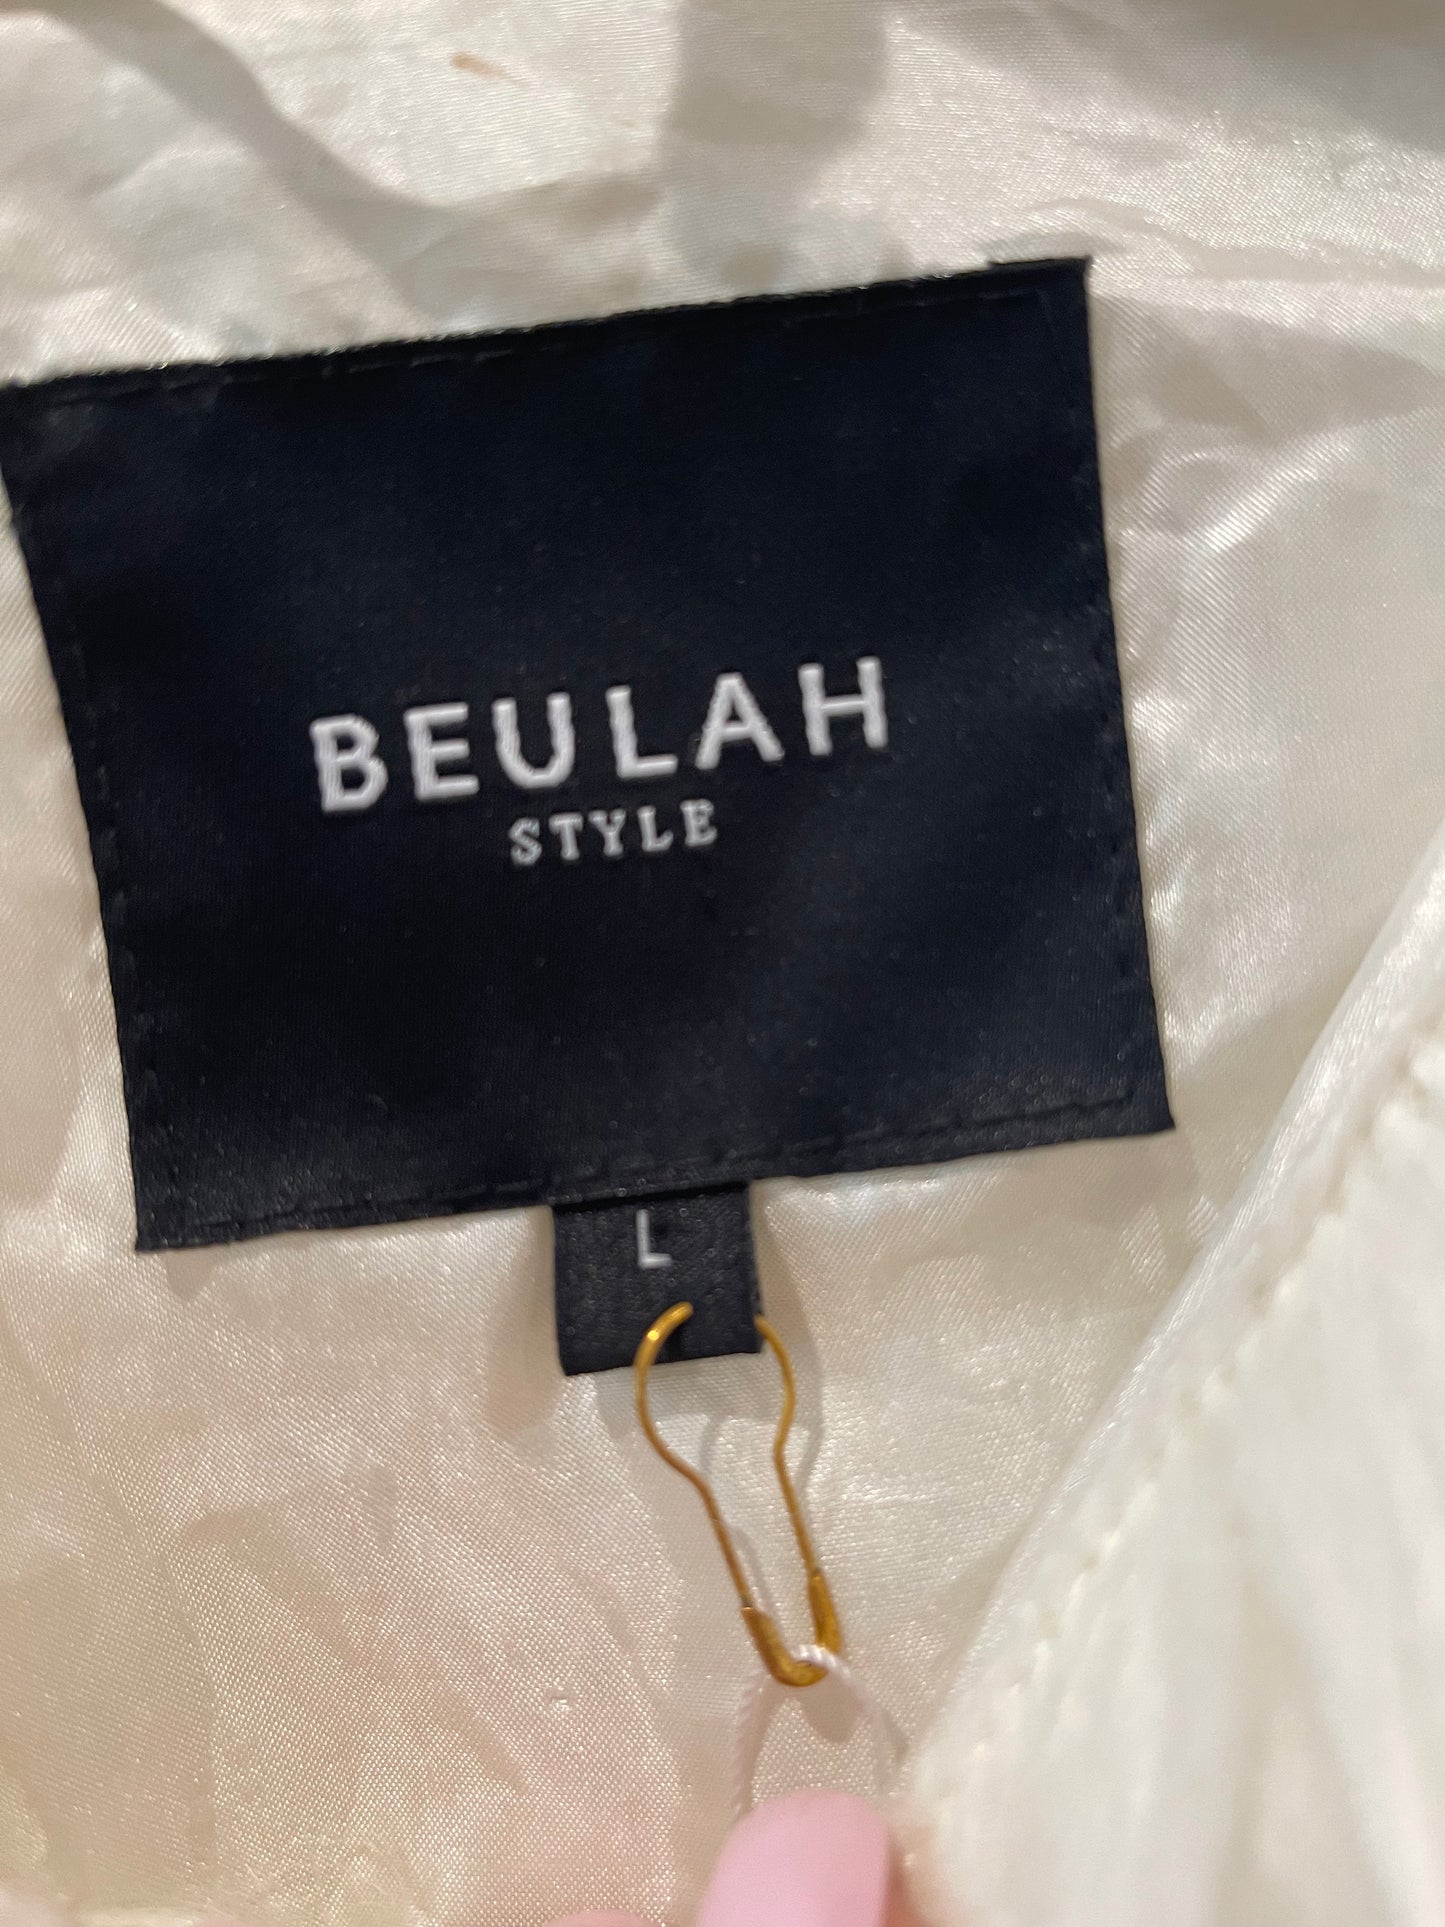 The Beulah Jacket